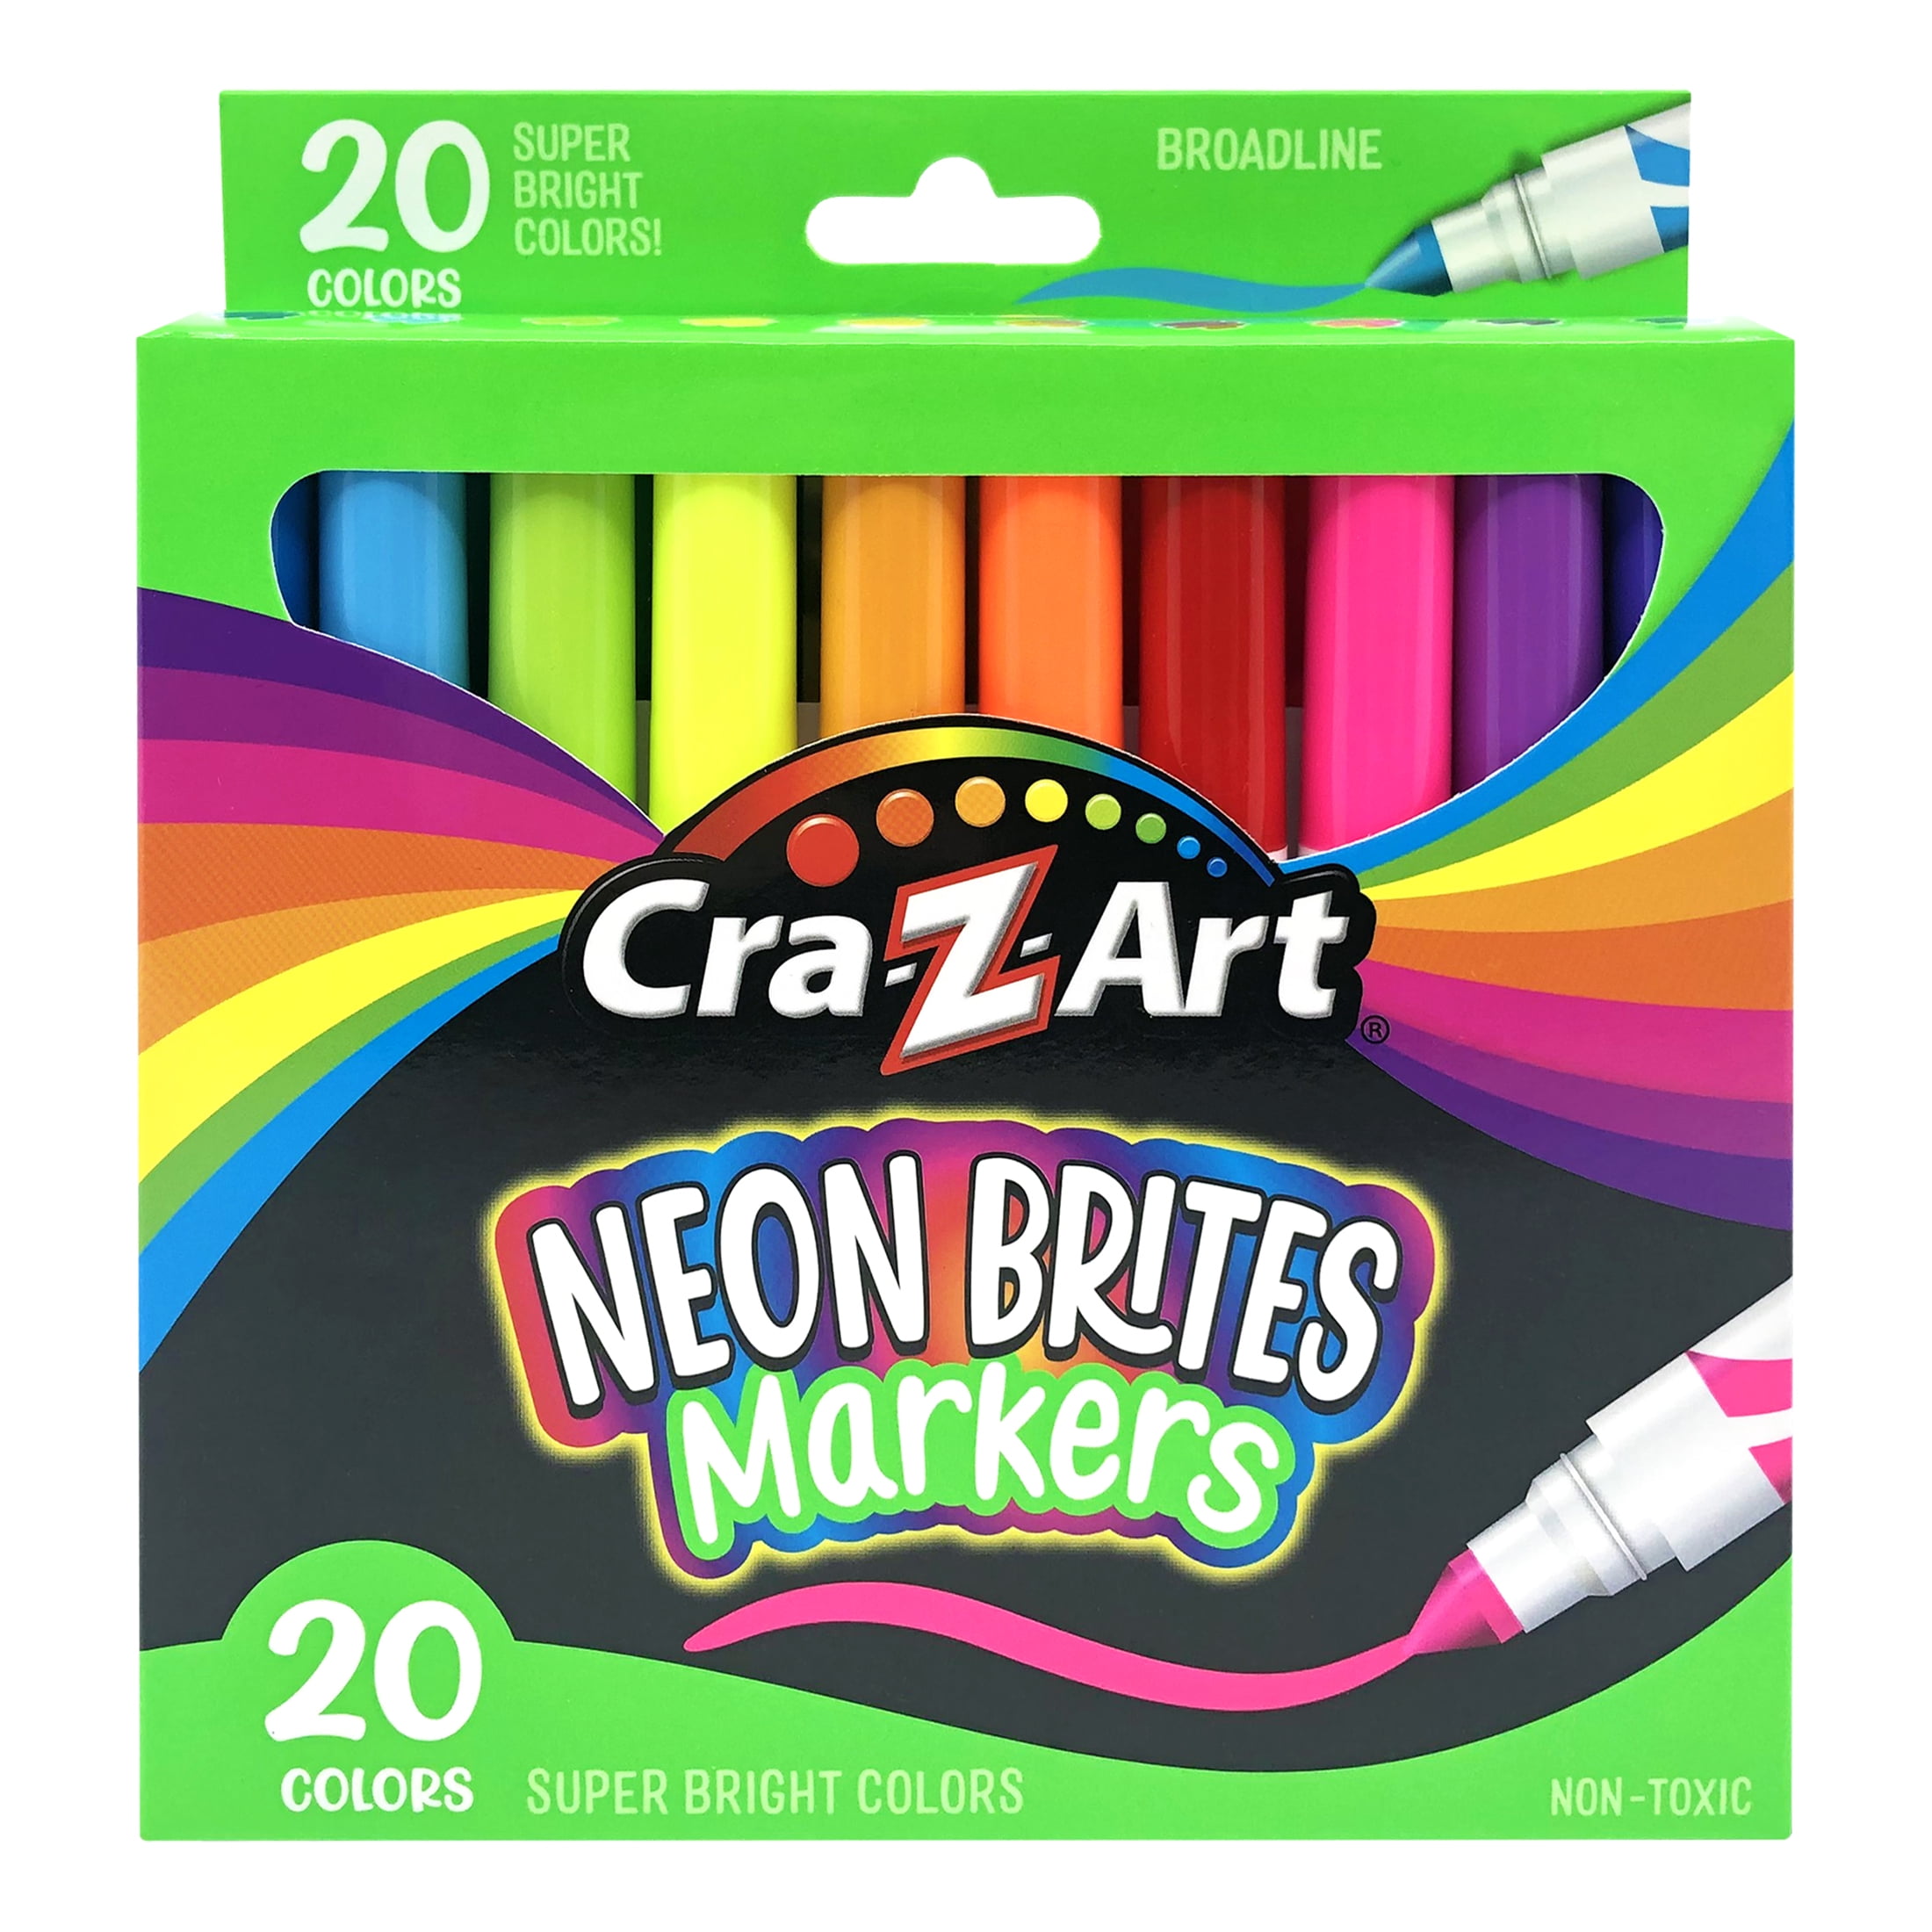 Cra Z Art 20 Count Neon Broad Line Marker Multicolor 21a8e16a 0869 4051 80d7 8fe22be2099b.4ca90d7585cefc4bfe257c28d06a1aad